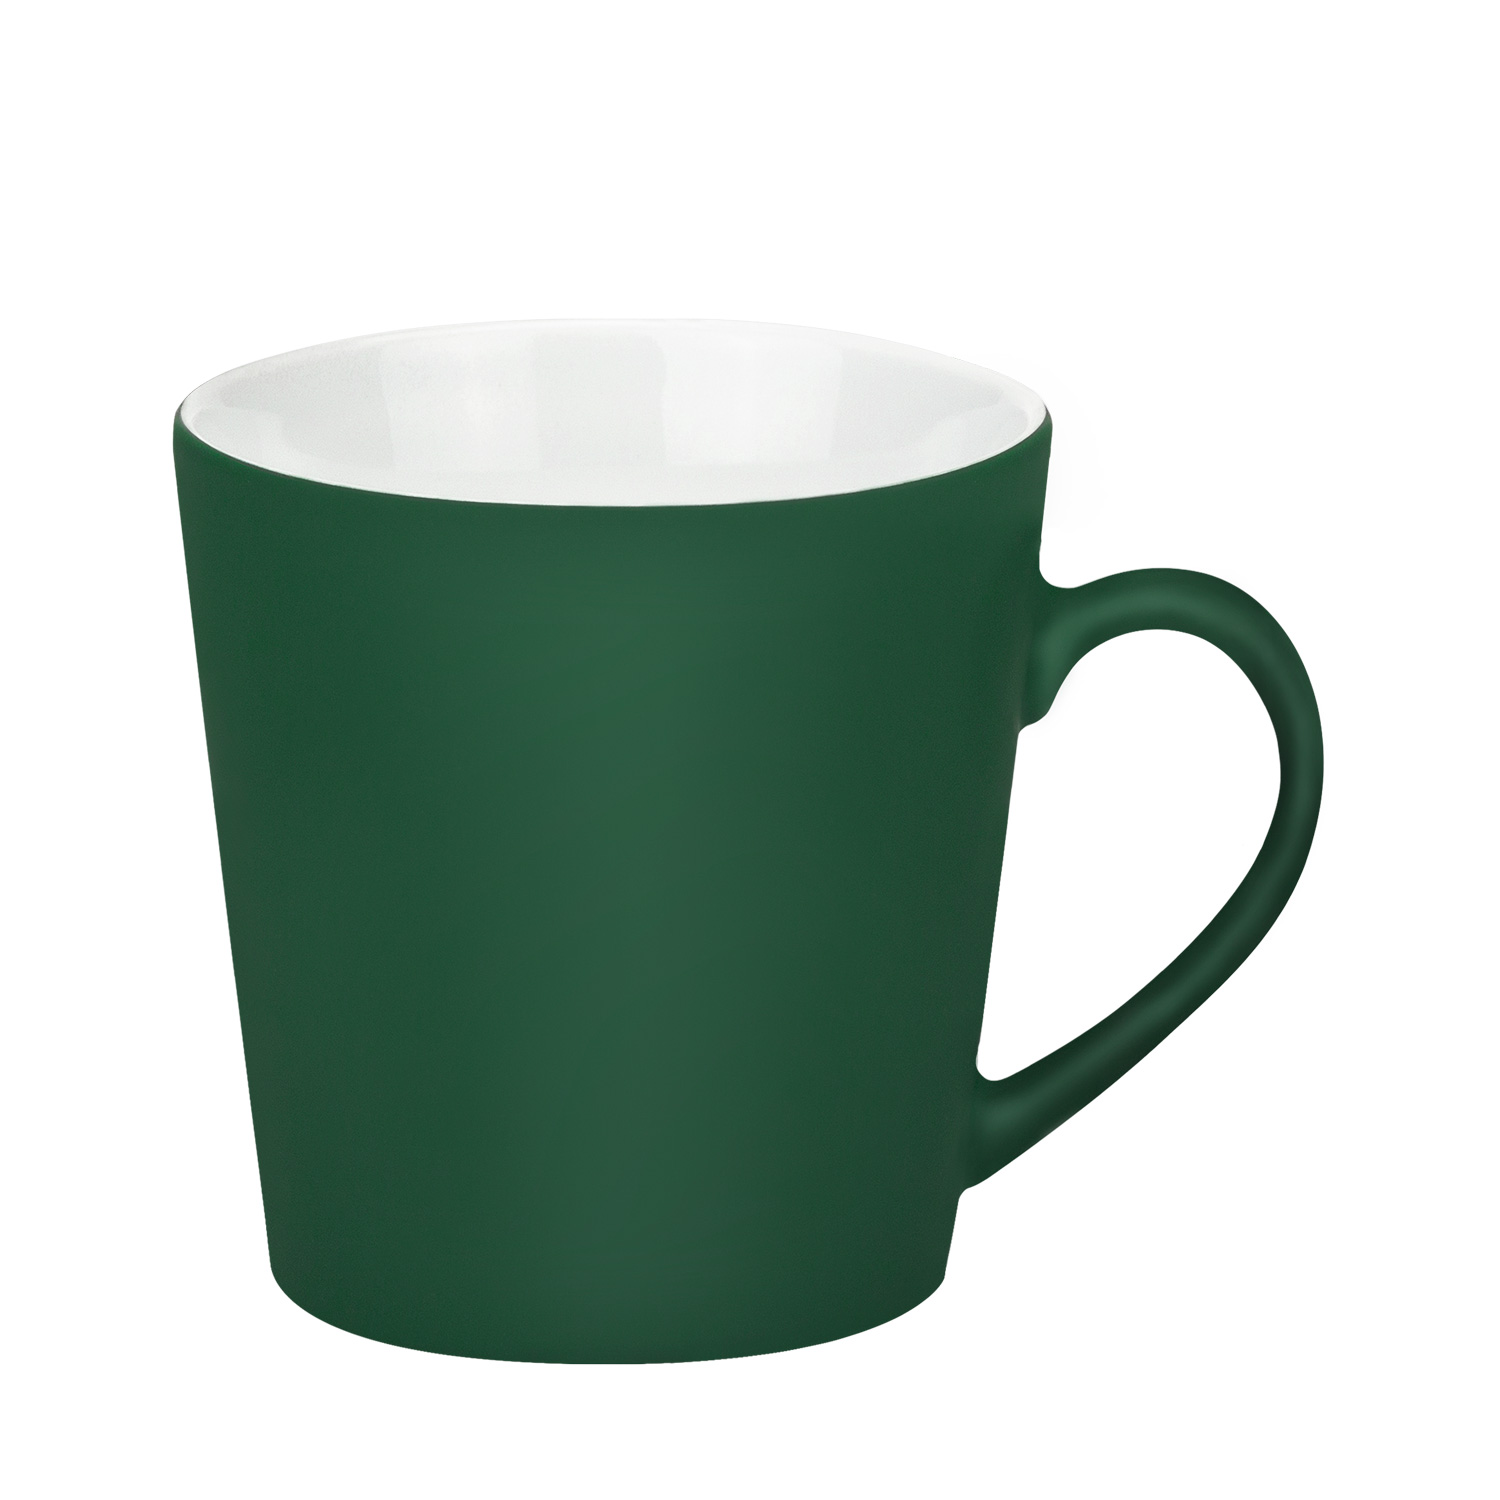 Артикул: A20024.040 — Керамическая кружка Sole Neo, 350 ml, soft-touch, зеленая